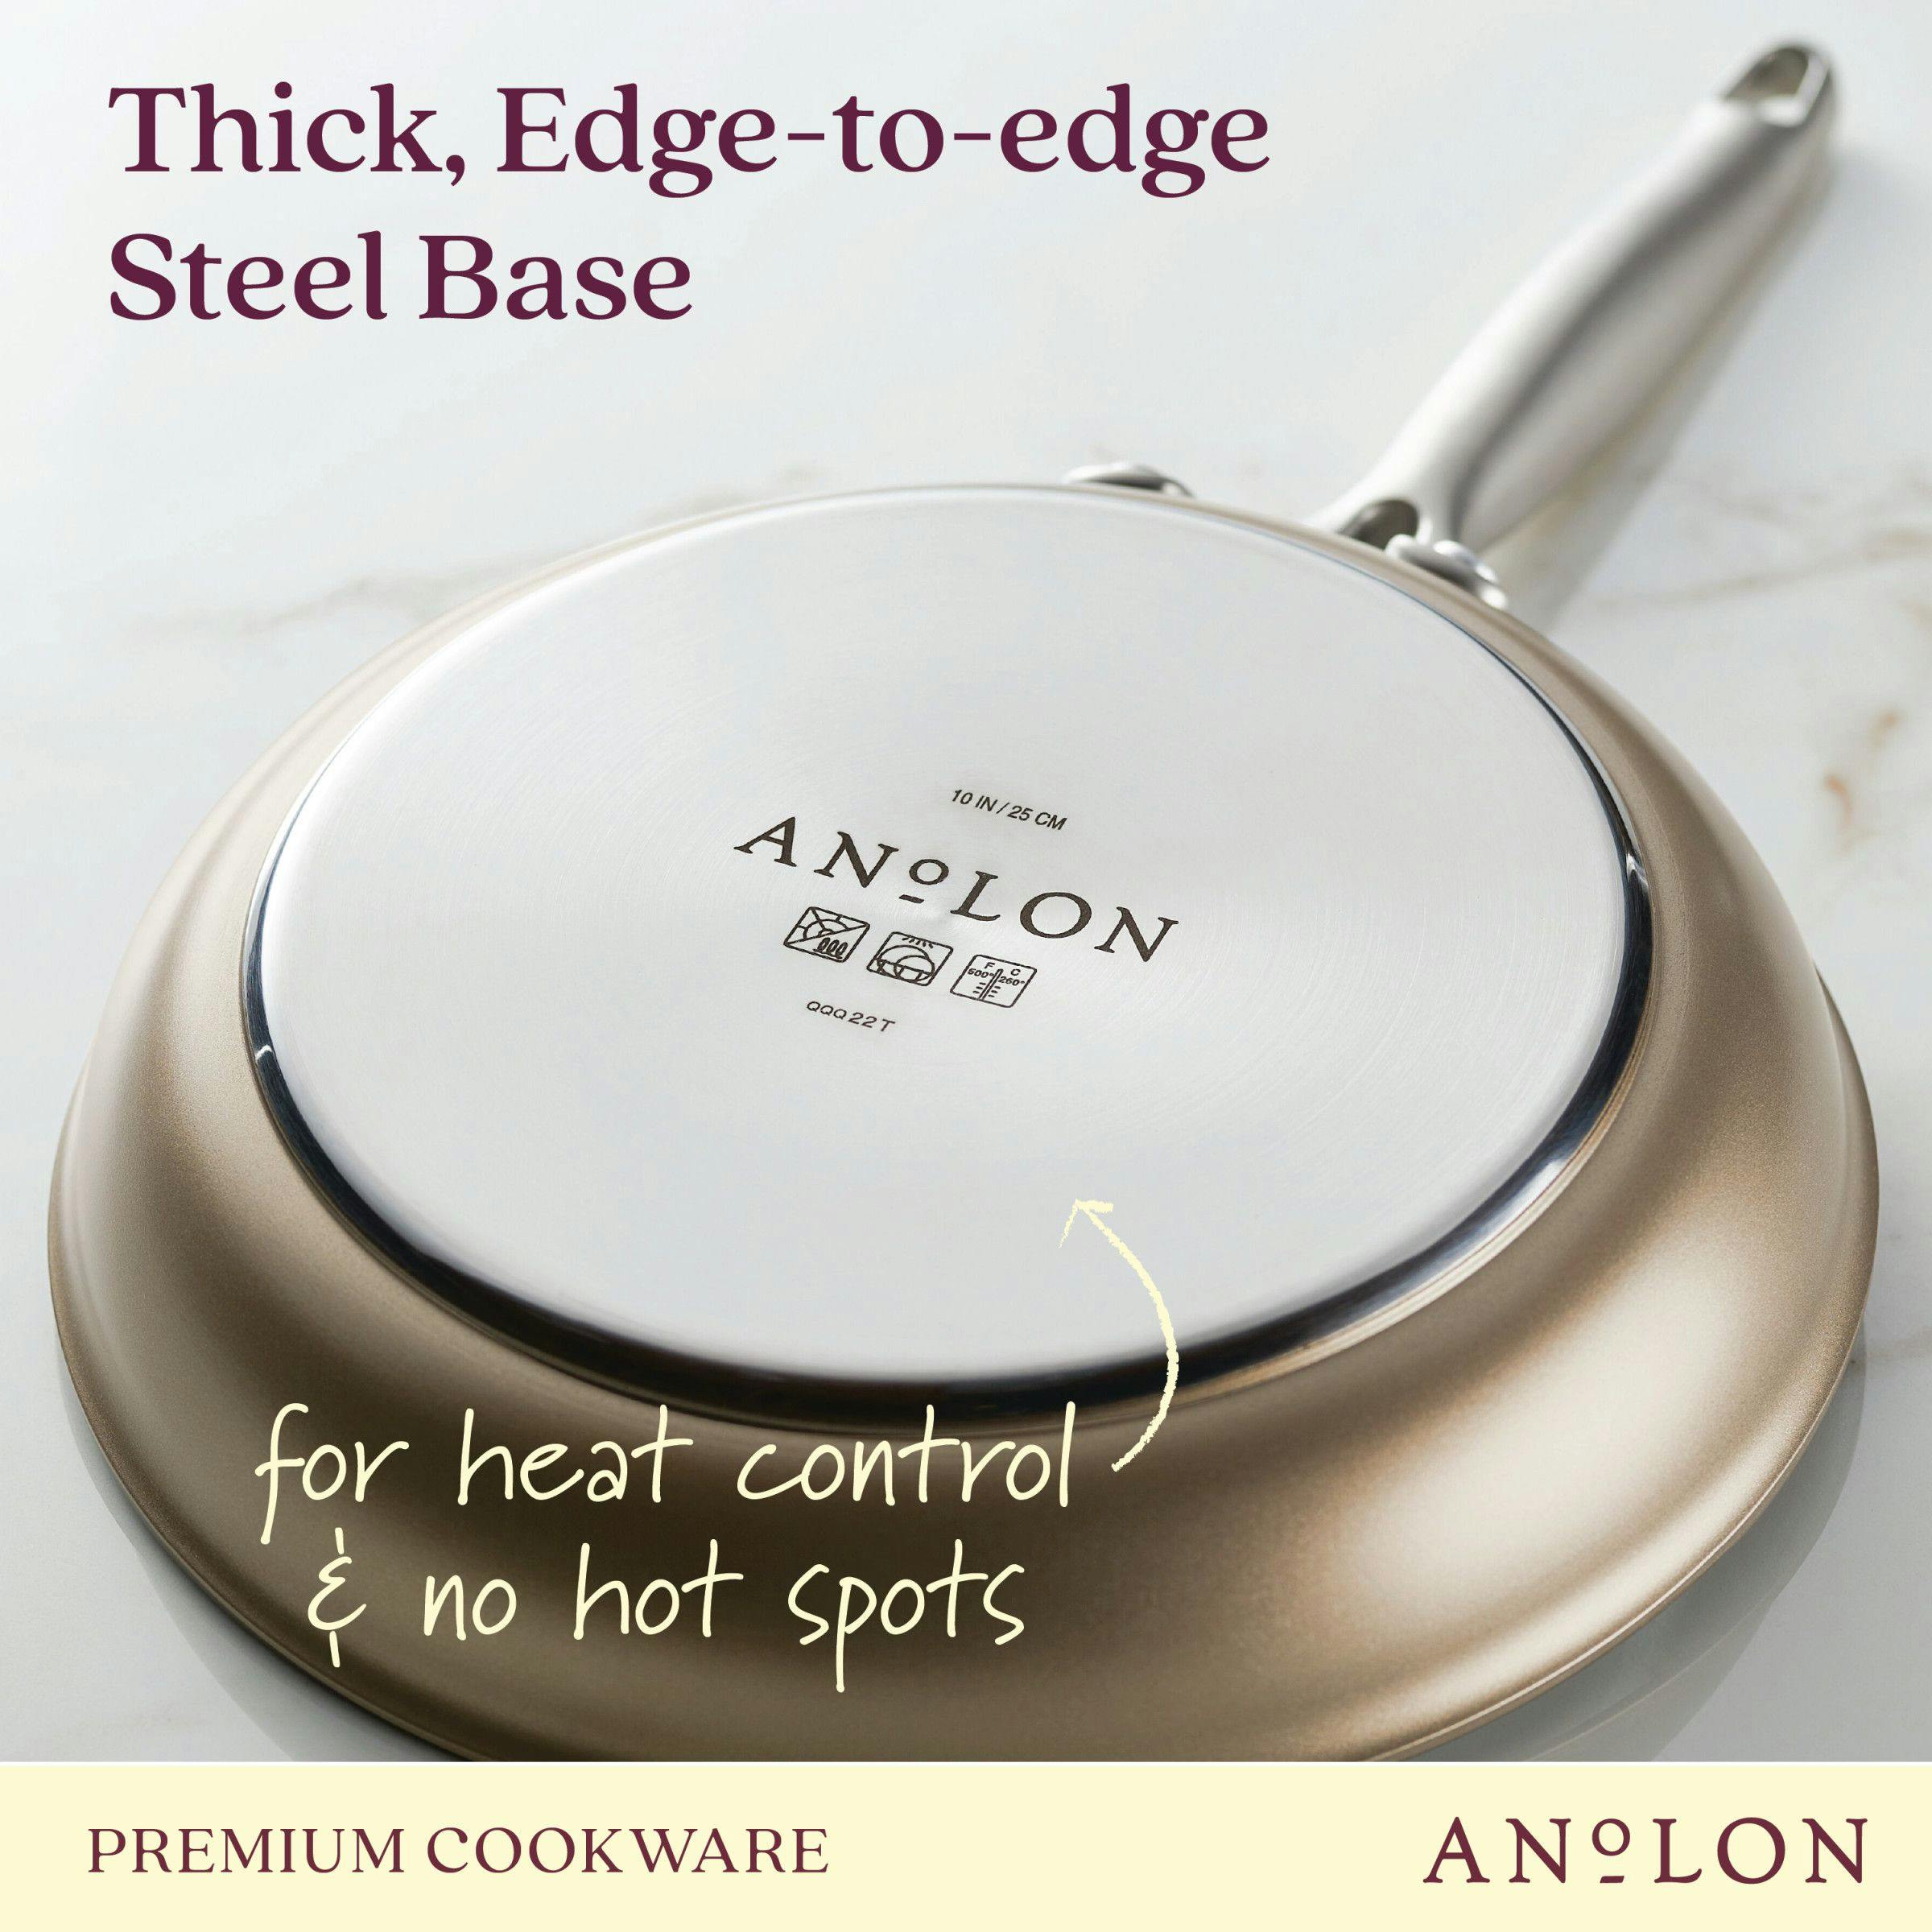 Anolon Ascend Hard Anodized Nonstick Kitchen Cookware Pots and Pans Set, 10-Piece